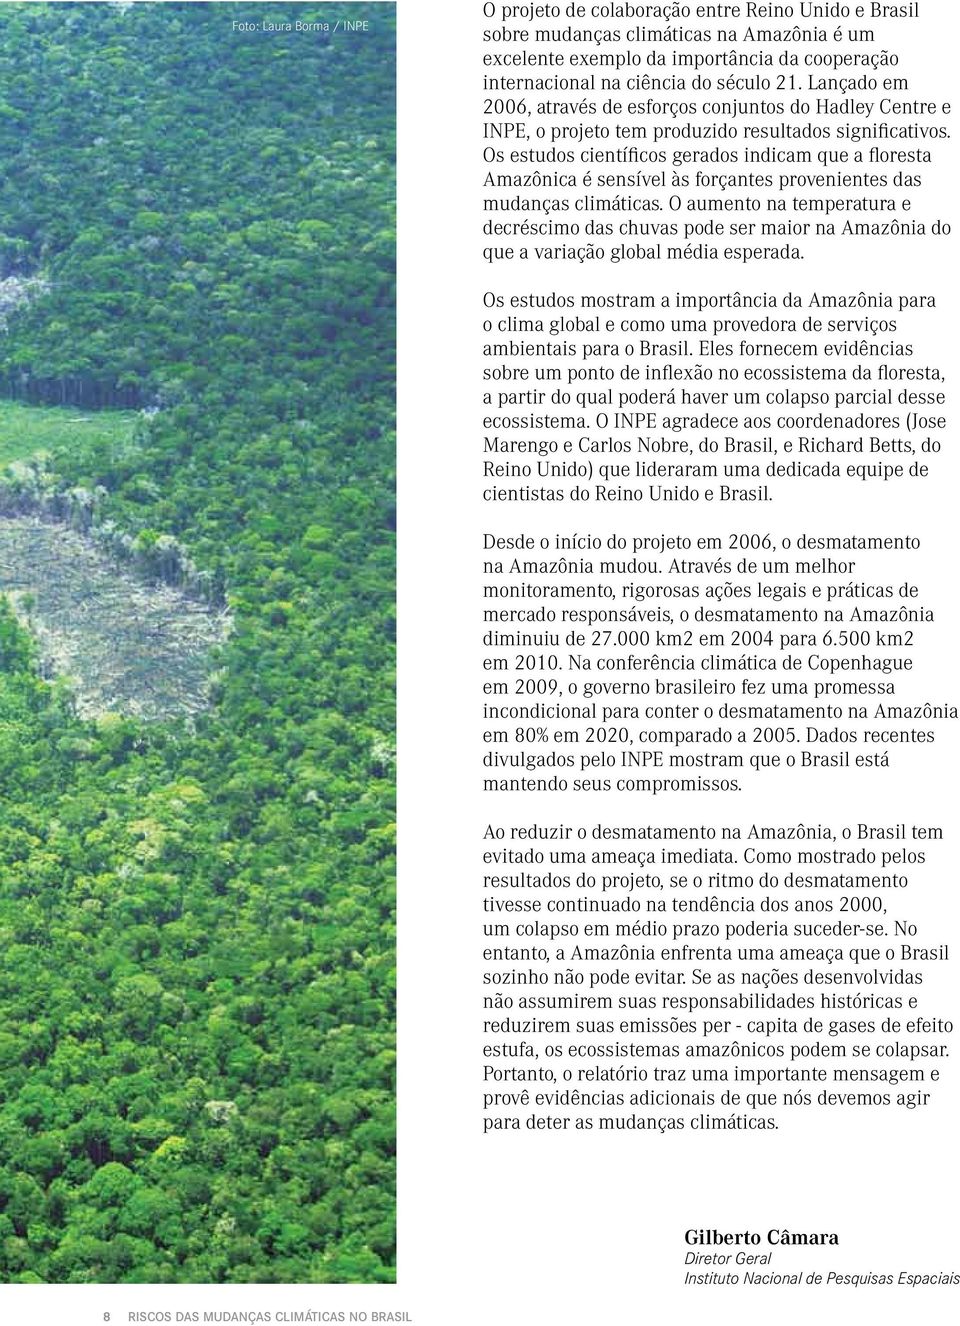 Os estudos científicos gerados indicam que a floresta Amazônica é sensível às forçantes provenientes das mudanças climáticas.